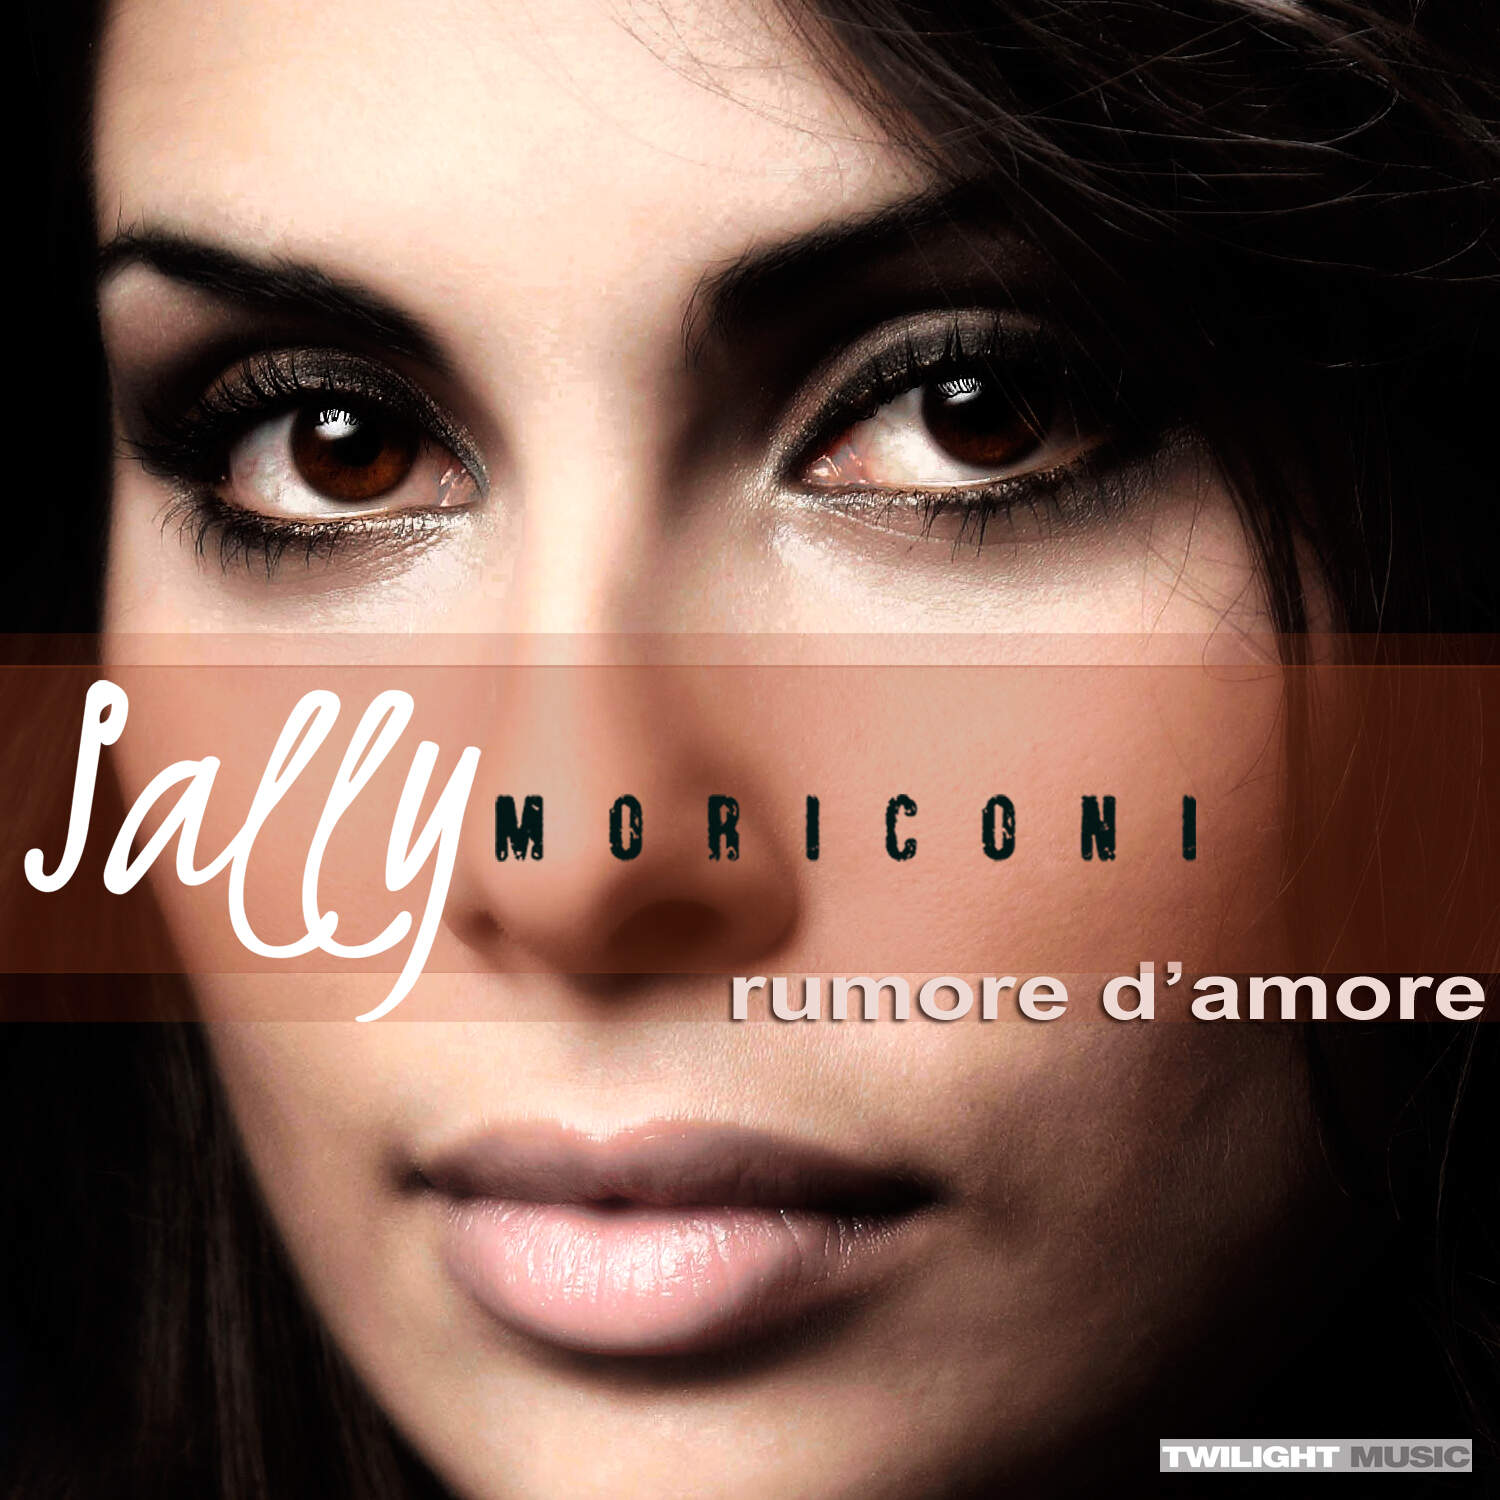 Singolo 2011, Scritto da Sara Moriconi, Produzione musicale Massimo Zuccaroli, Edizioni Twilight